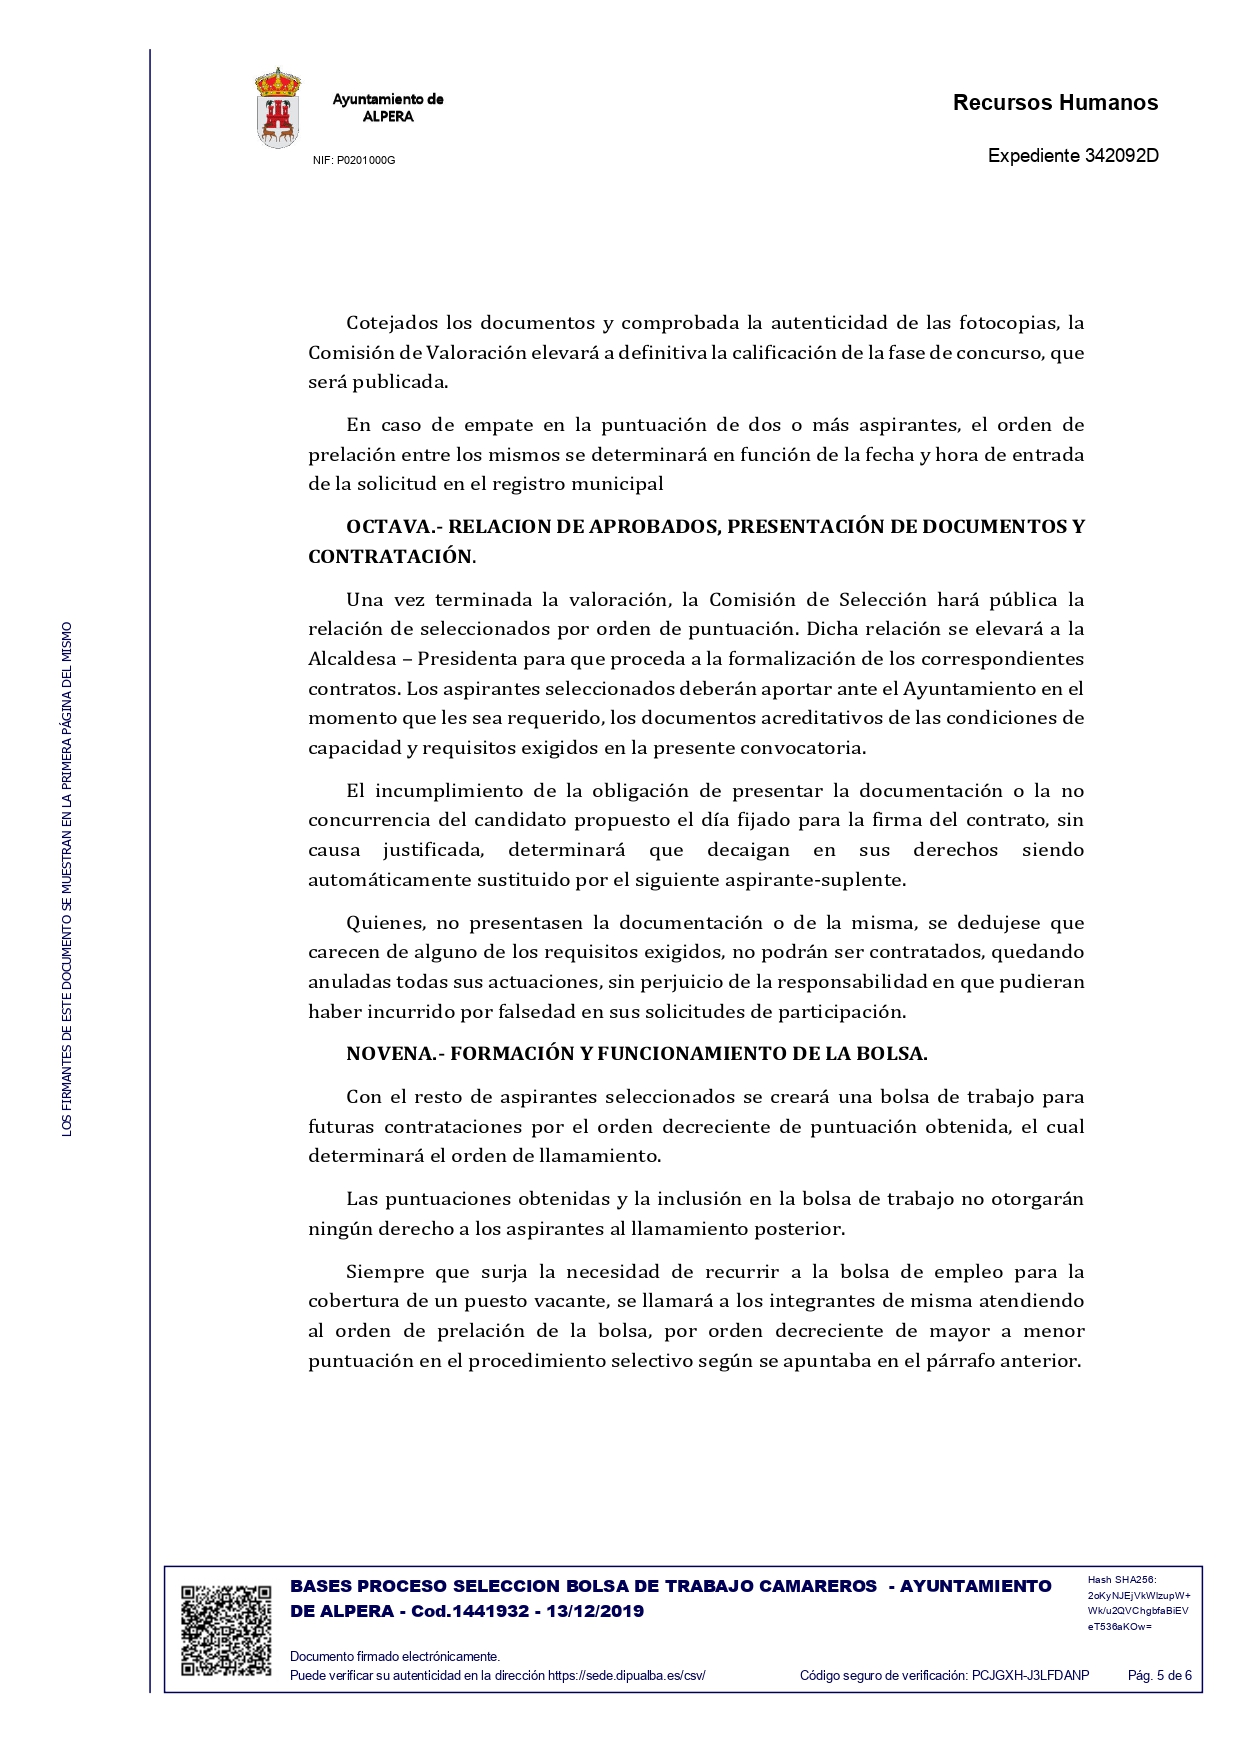 BASES PROCESO SELECCION BOLSA DE TRABAJO CAMAREROS FIRMADO pages to jpg 0005